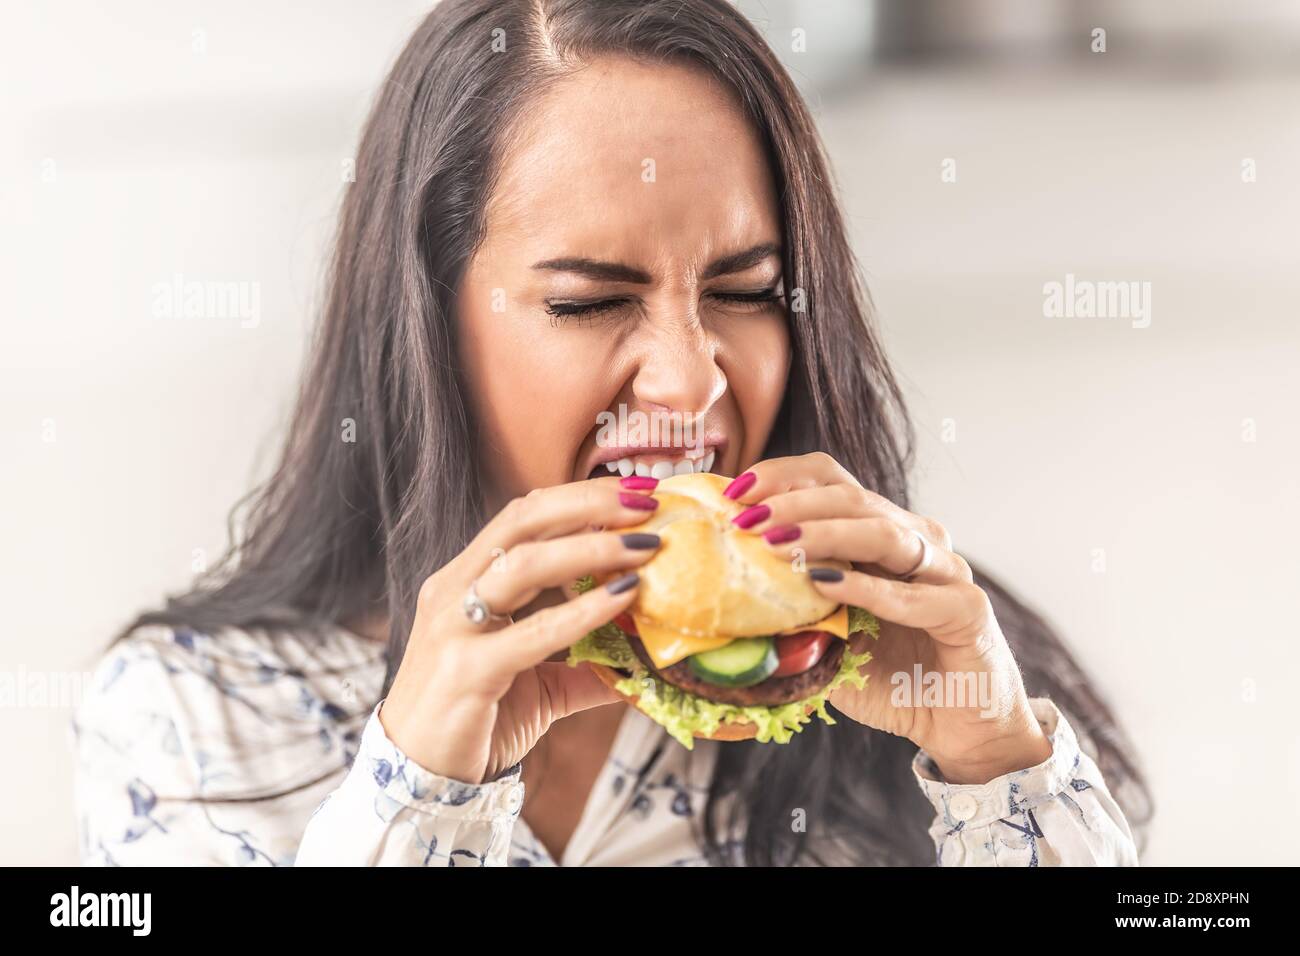 Mädchen versuchen, ihren Mund so weit wie möglich zu öffnen, um einen großen Hamburger zu gebissen. Stockfoto